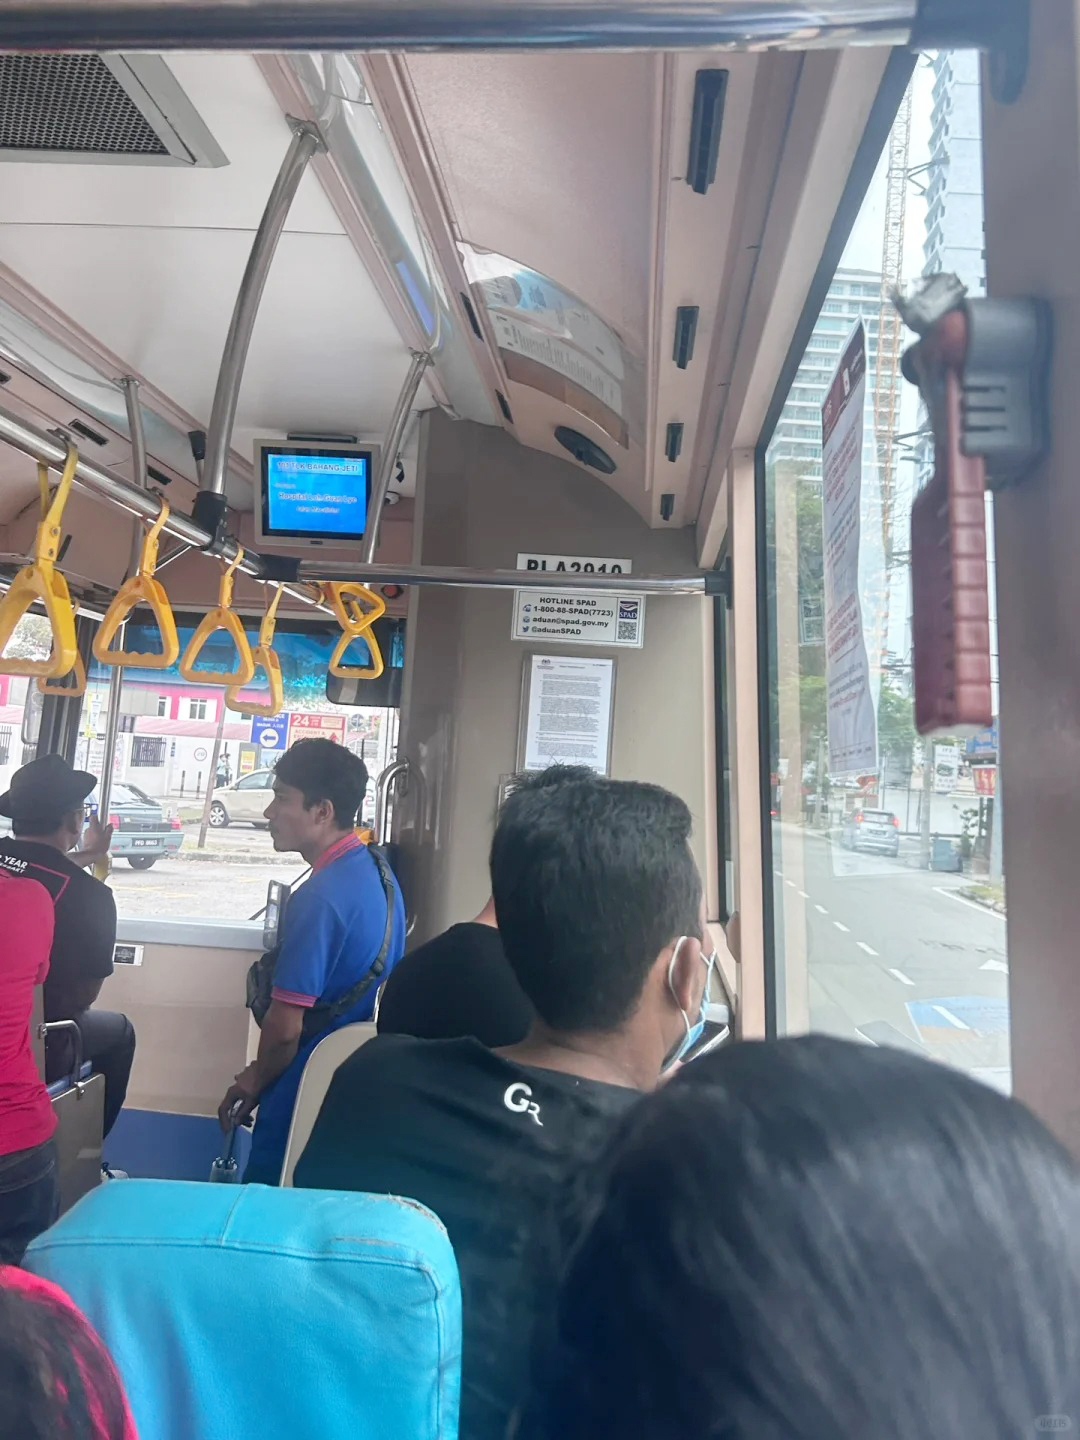 台湾游客迷路 遇热心印裔夫妇 陪同搭巴士 还给车费